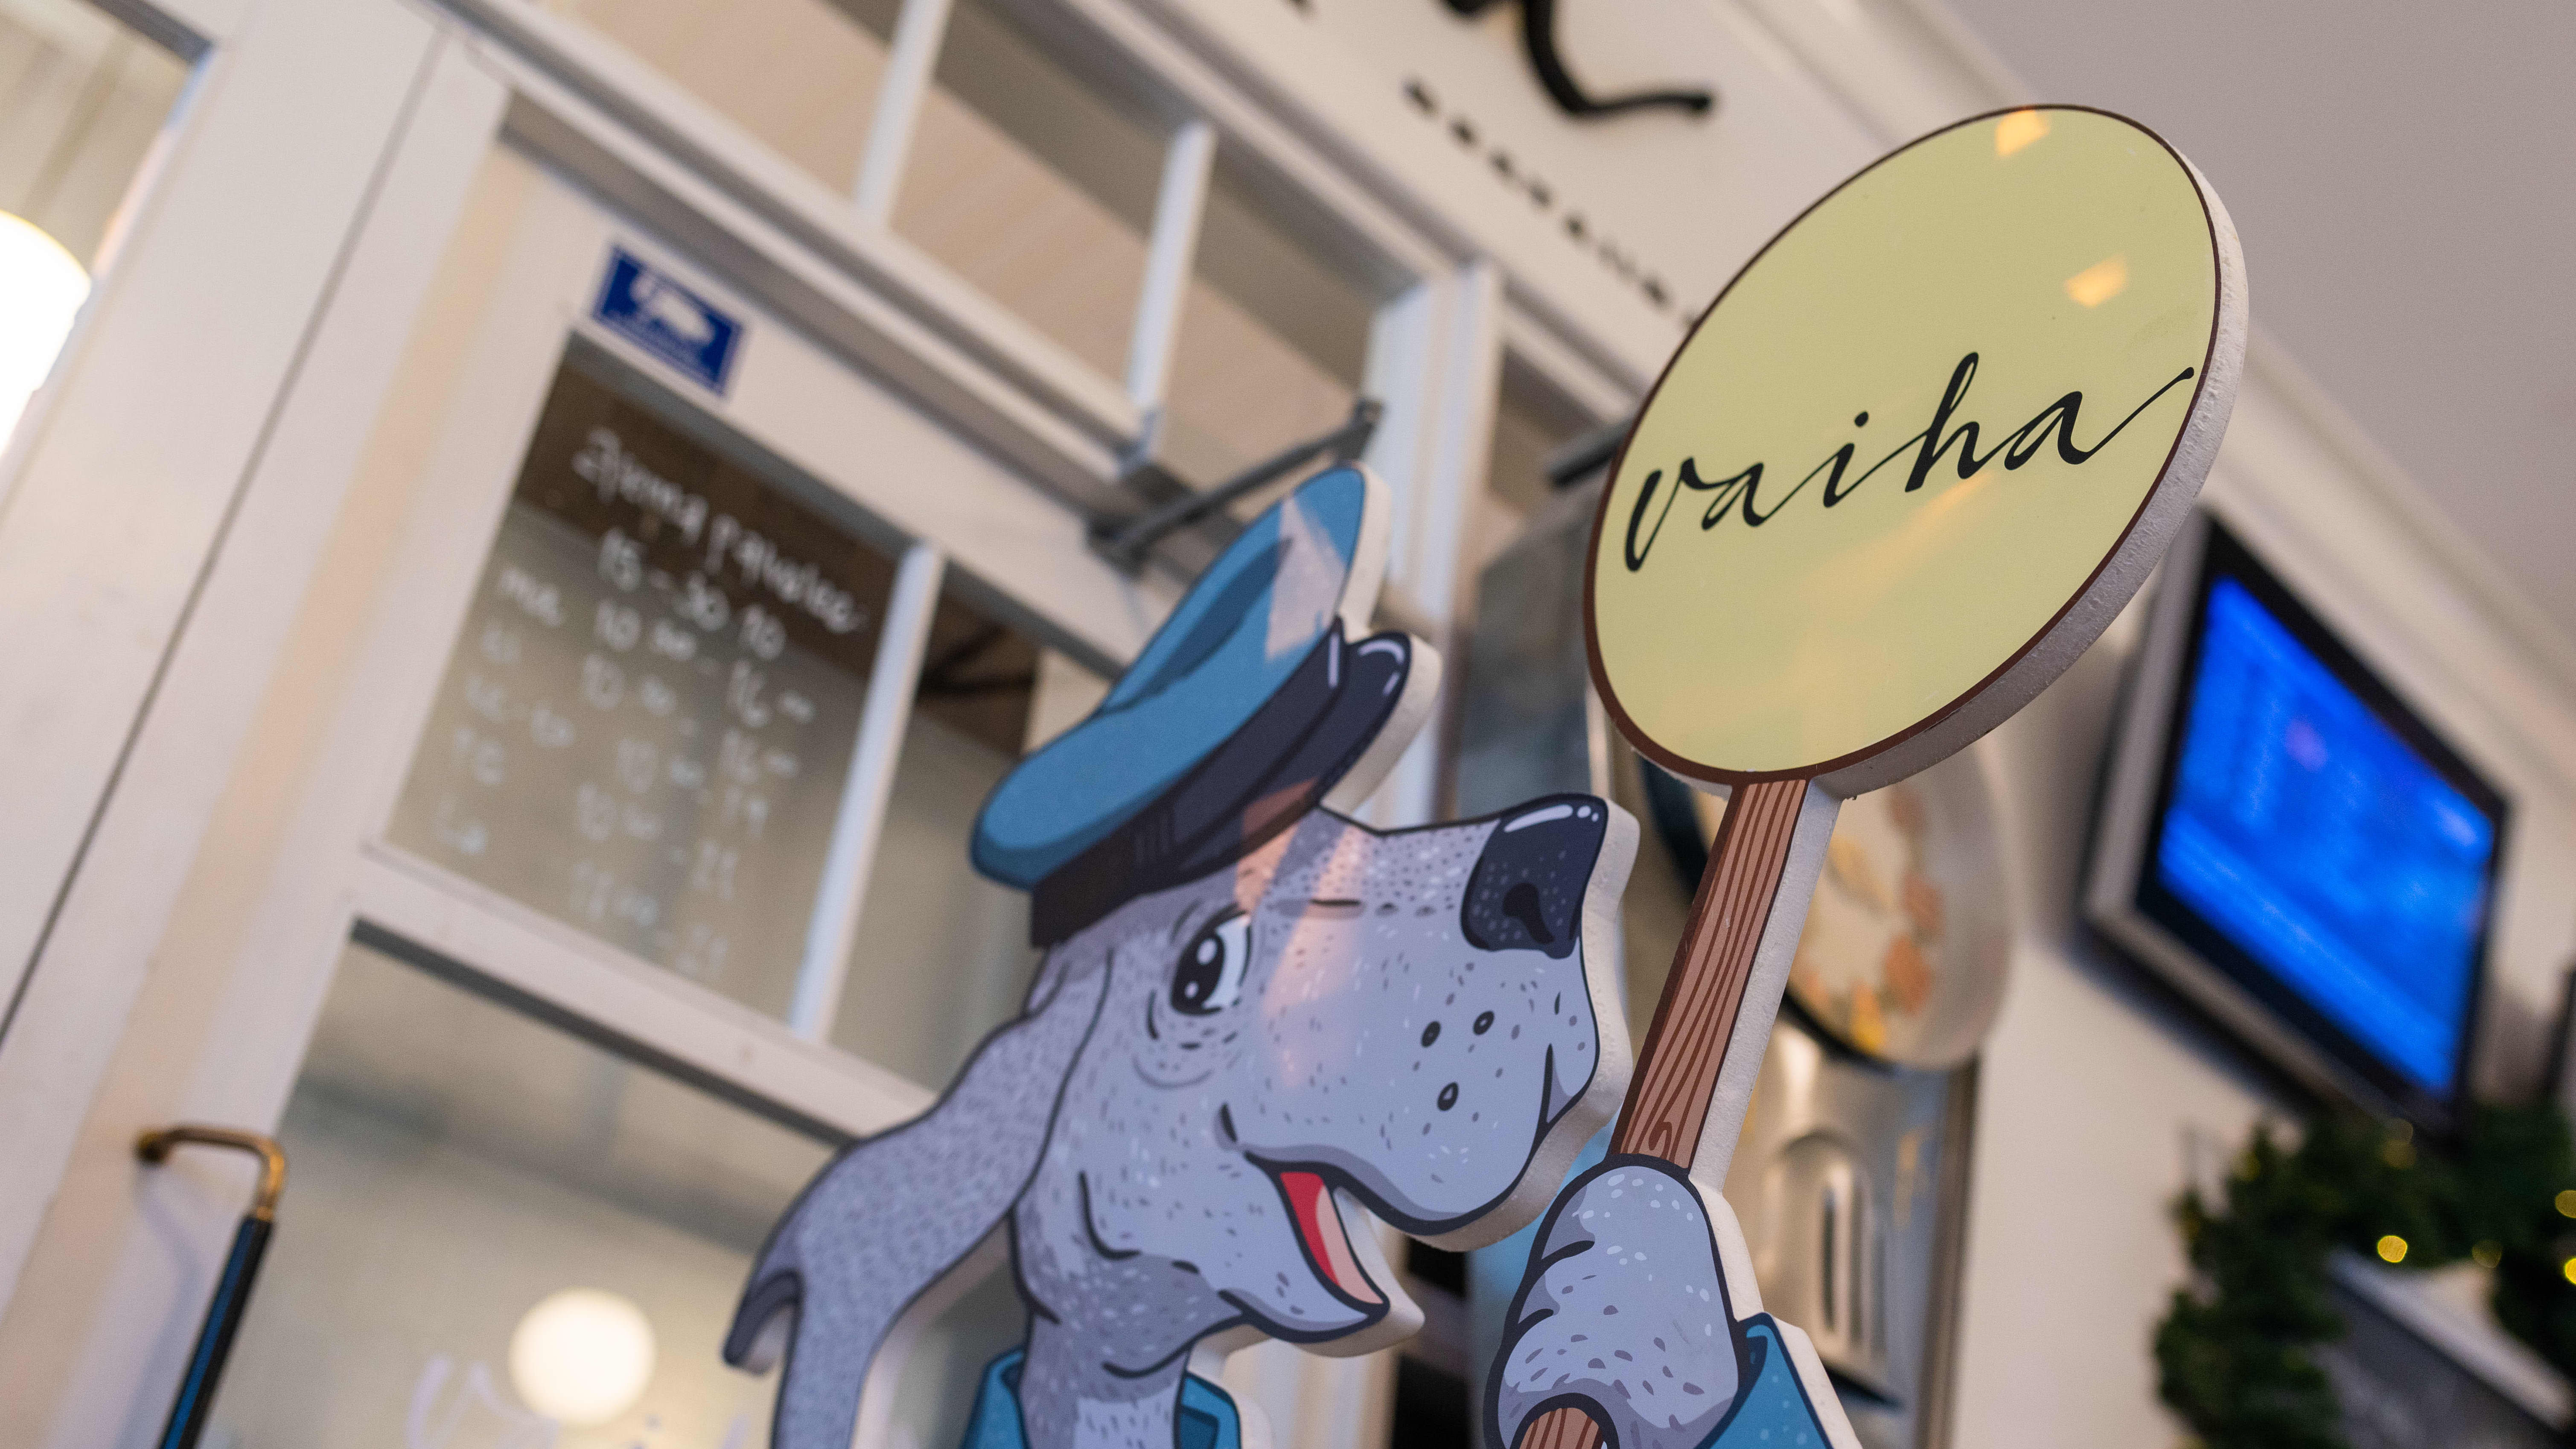 Mikkelin rautatieaseman sisätiloissa ravintola vaihan mainoskyltti. Mainoskyltissä ravintolaa mainostaa konduktooriksi pukeutunut piirretty koirahahmo.